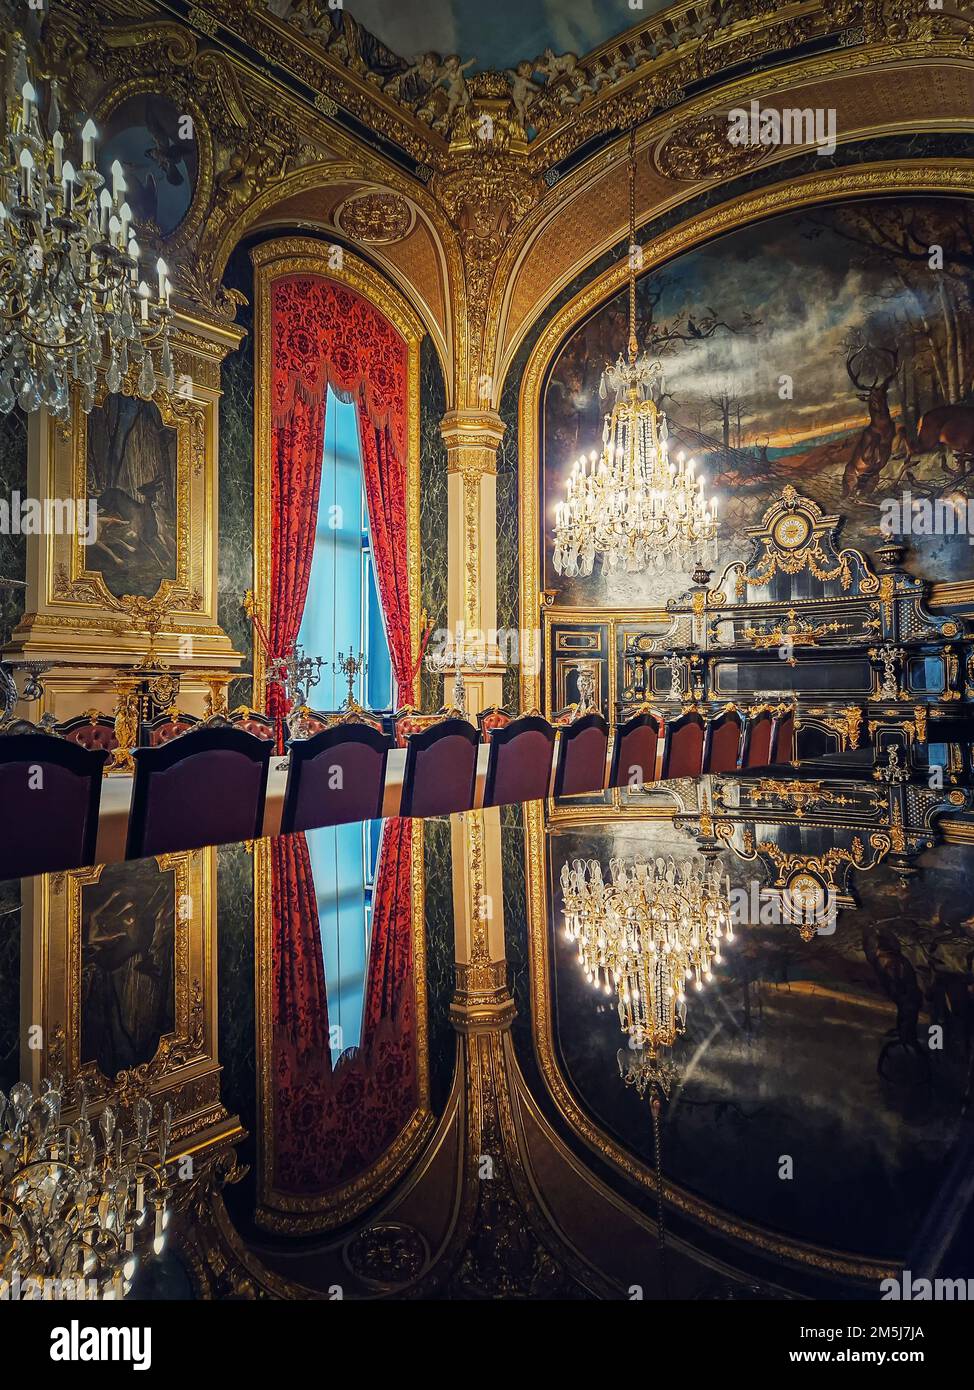 Comedor de Napoleón III en el Museo del Louvre. Hermosos apartamentos de la familia real decorados, adornados con oro, pinturas murales y candelabros de cristal Foto de stock